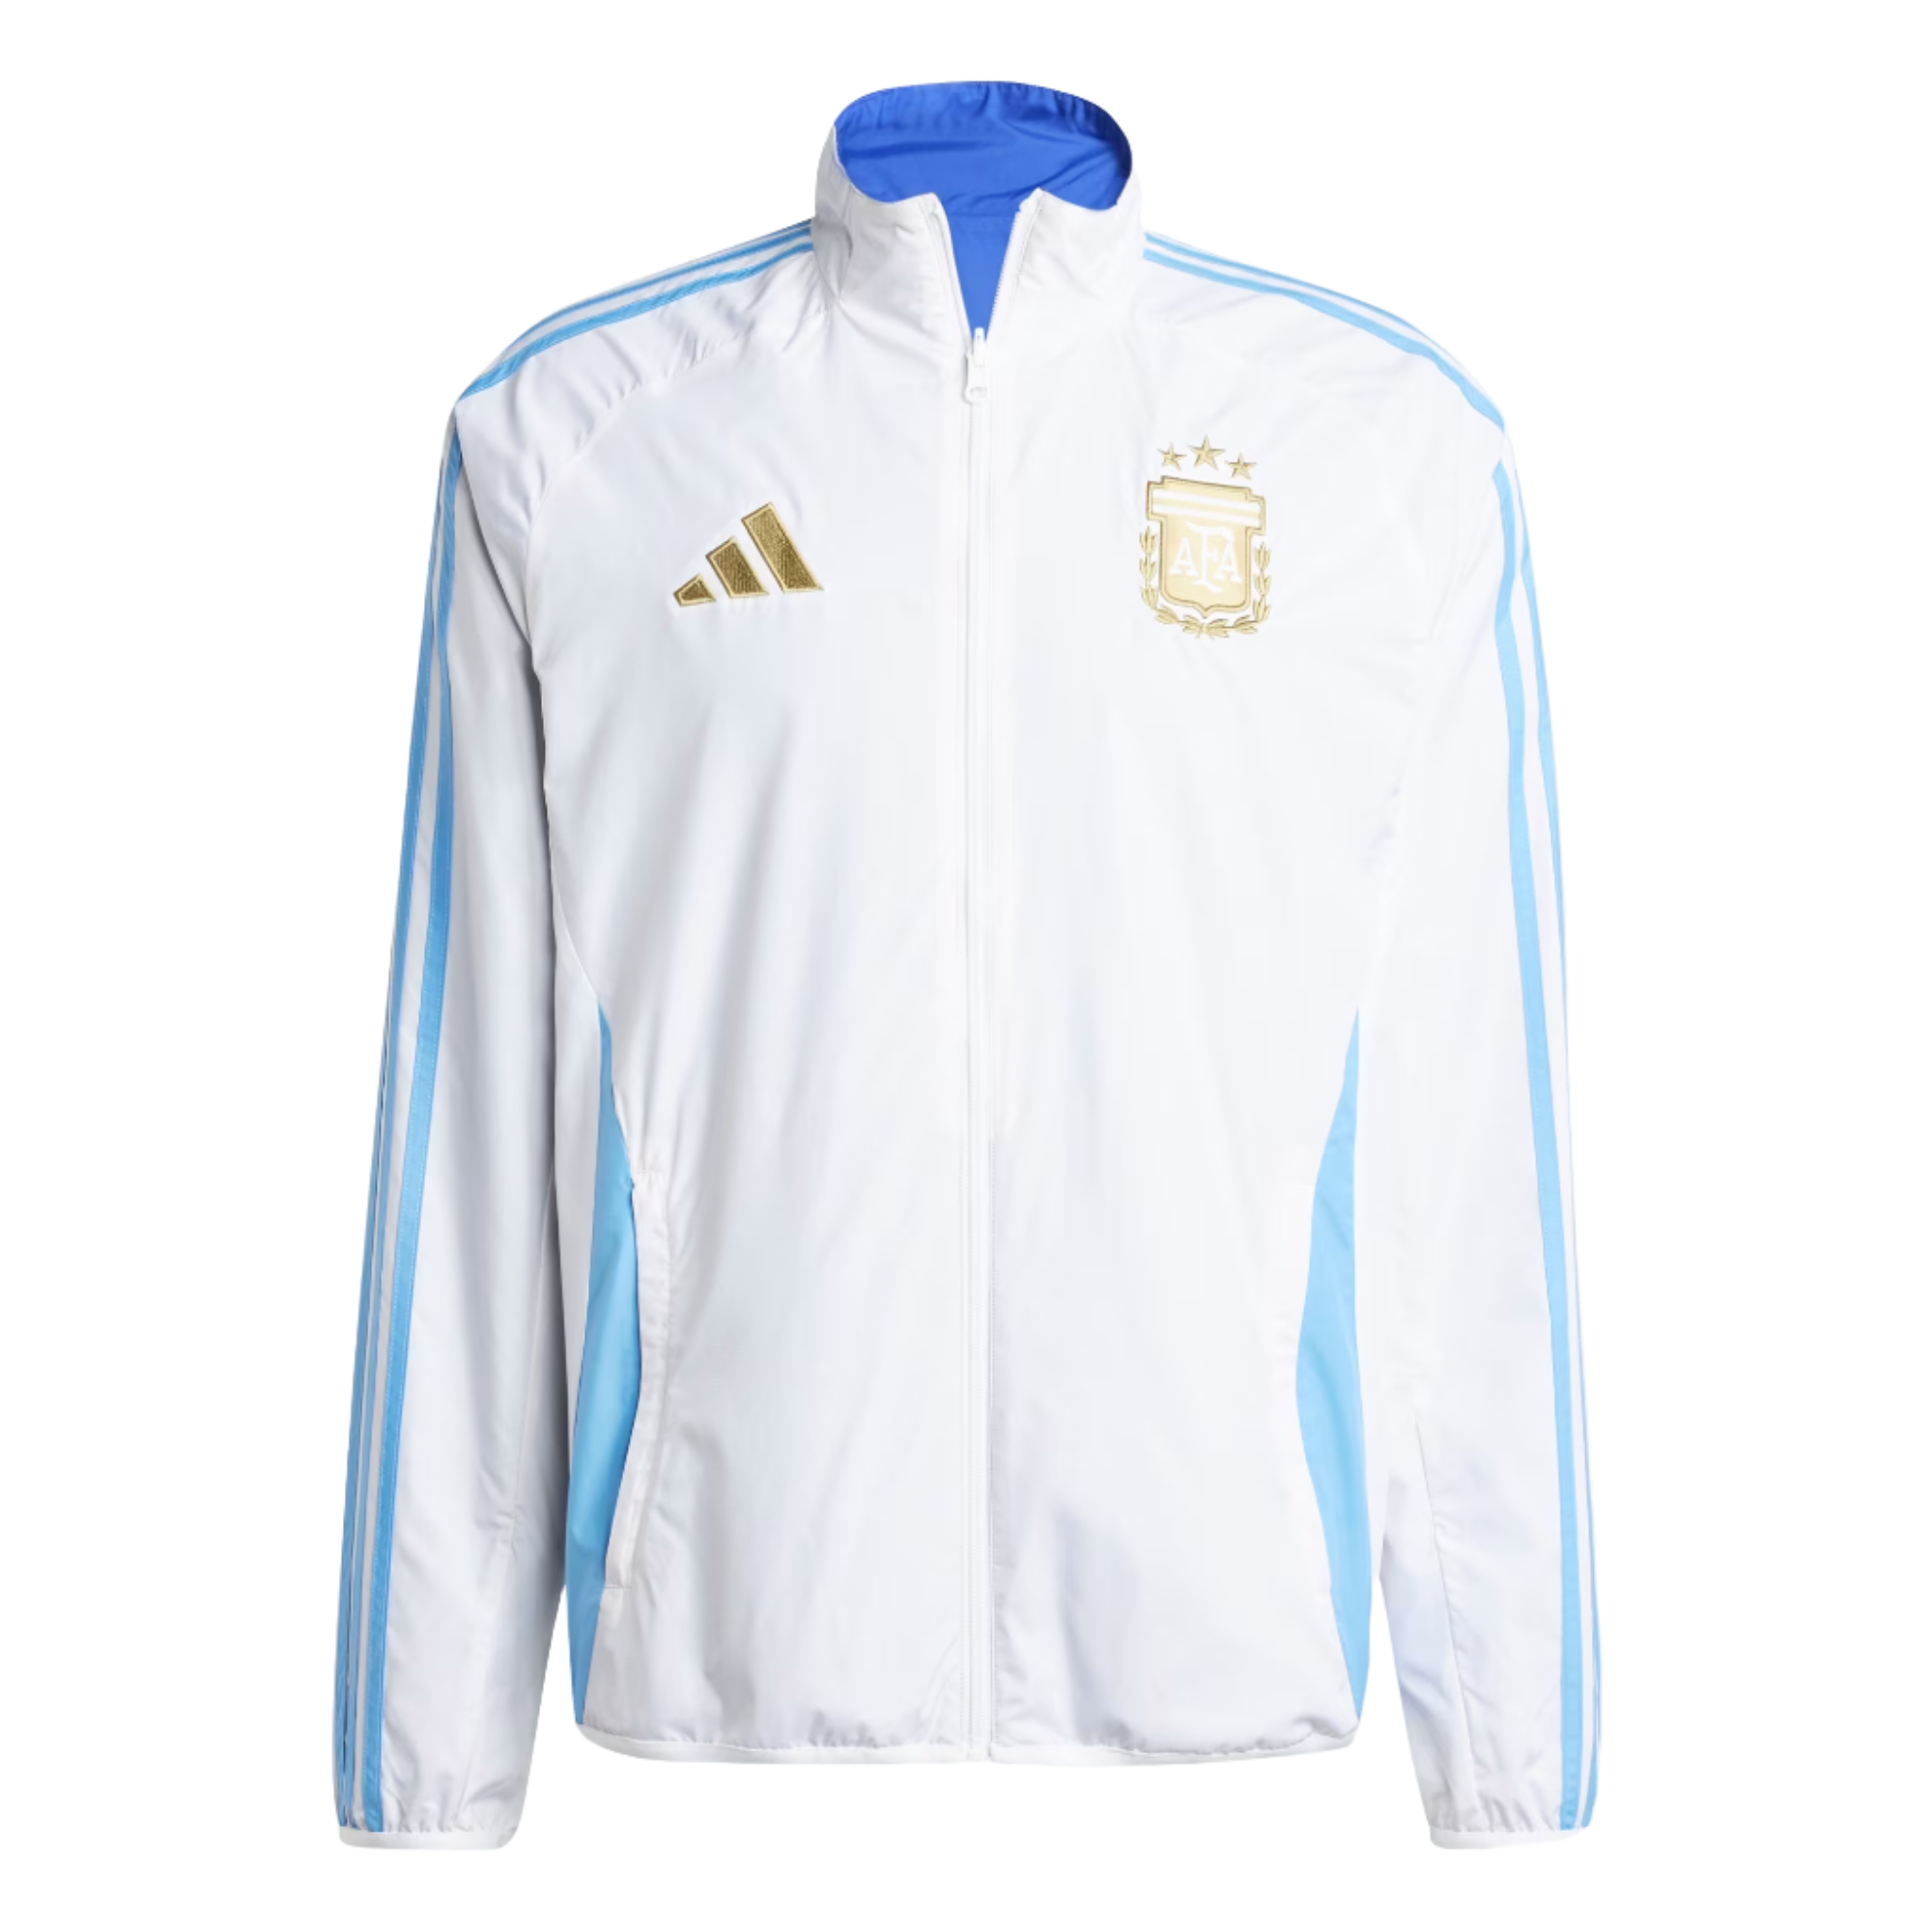 Adidas Argentina Anthem Jacket